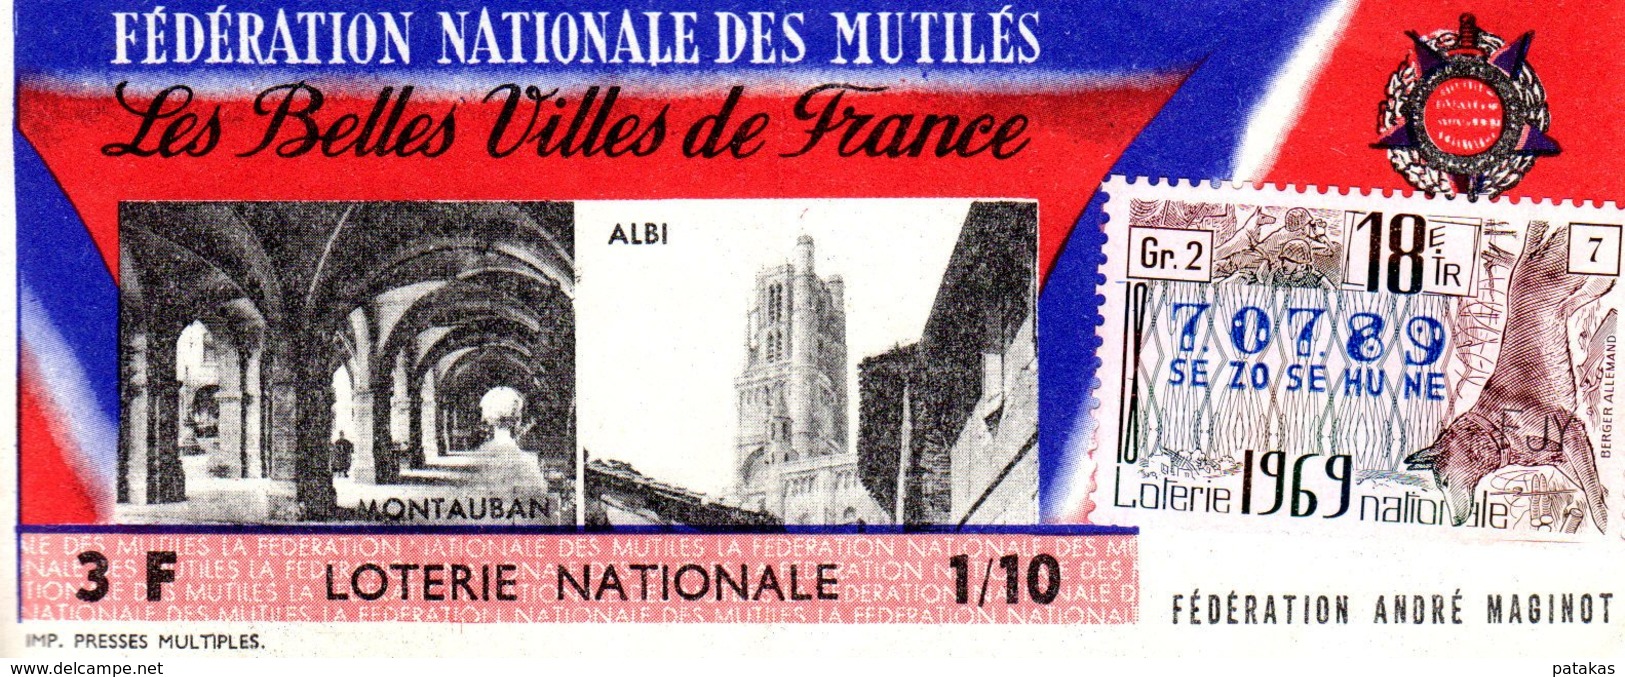 France - 263 - Les Belles Villes DeFrance Fédération Nationale Des Mutilés - 18ème Tranche 1969 - Lottery Tickets